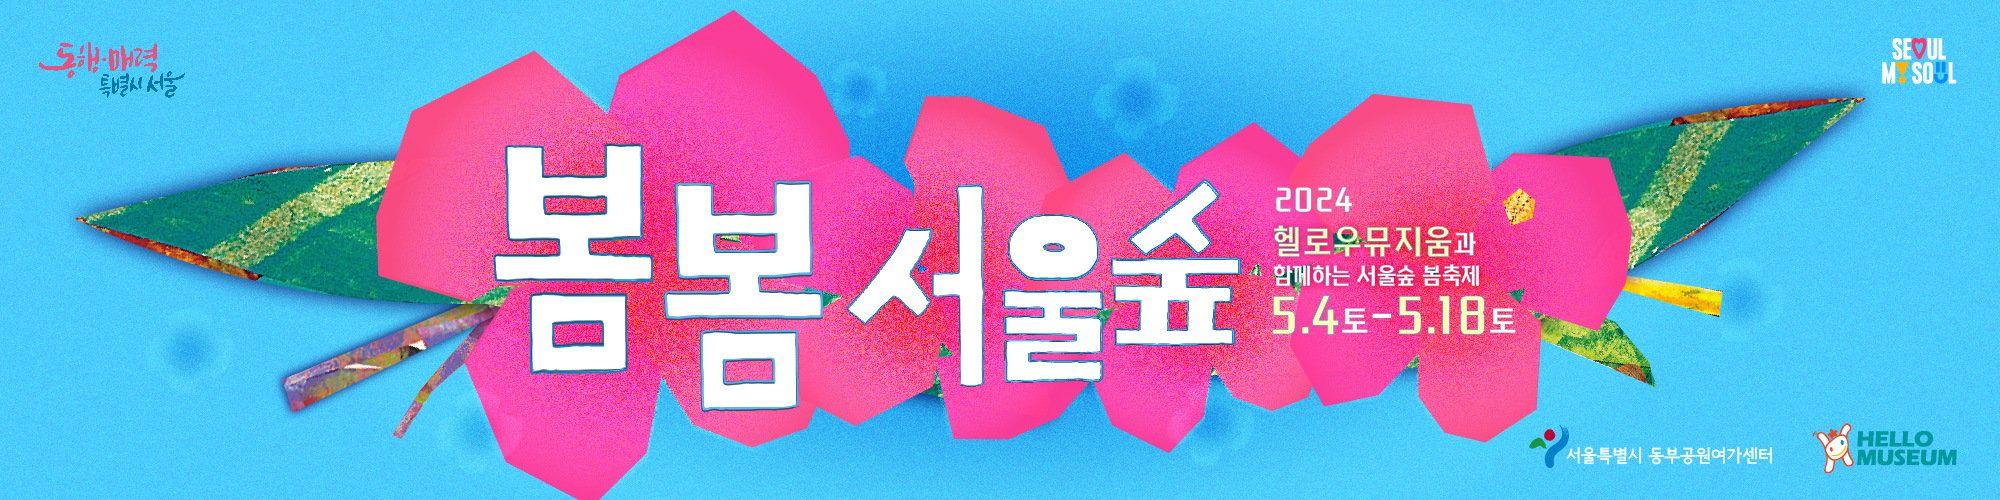 봄봄 서울숲 
2024 헬로우 뮤지움과 함계하는 서울숲 봄축제 5.4.(토)~18.(토)